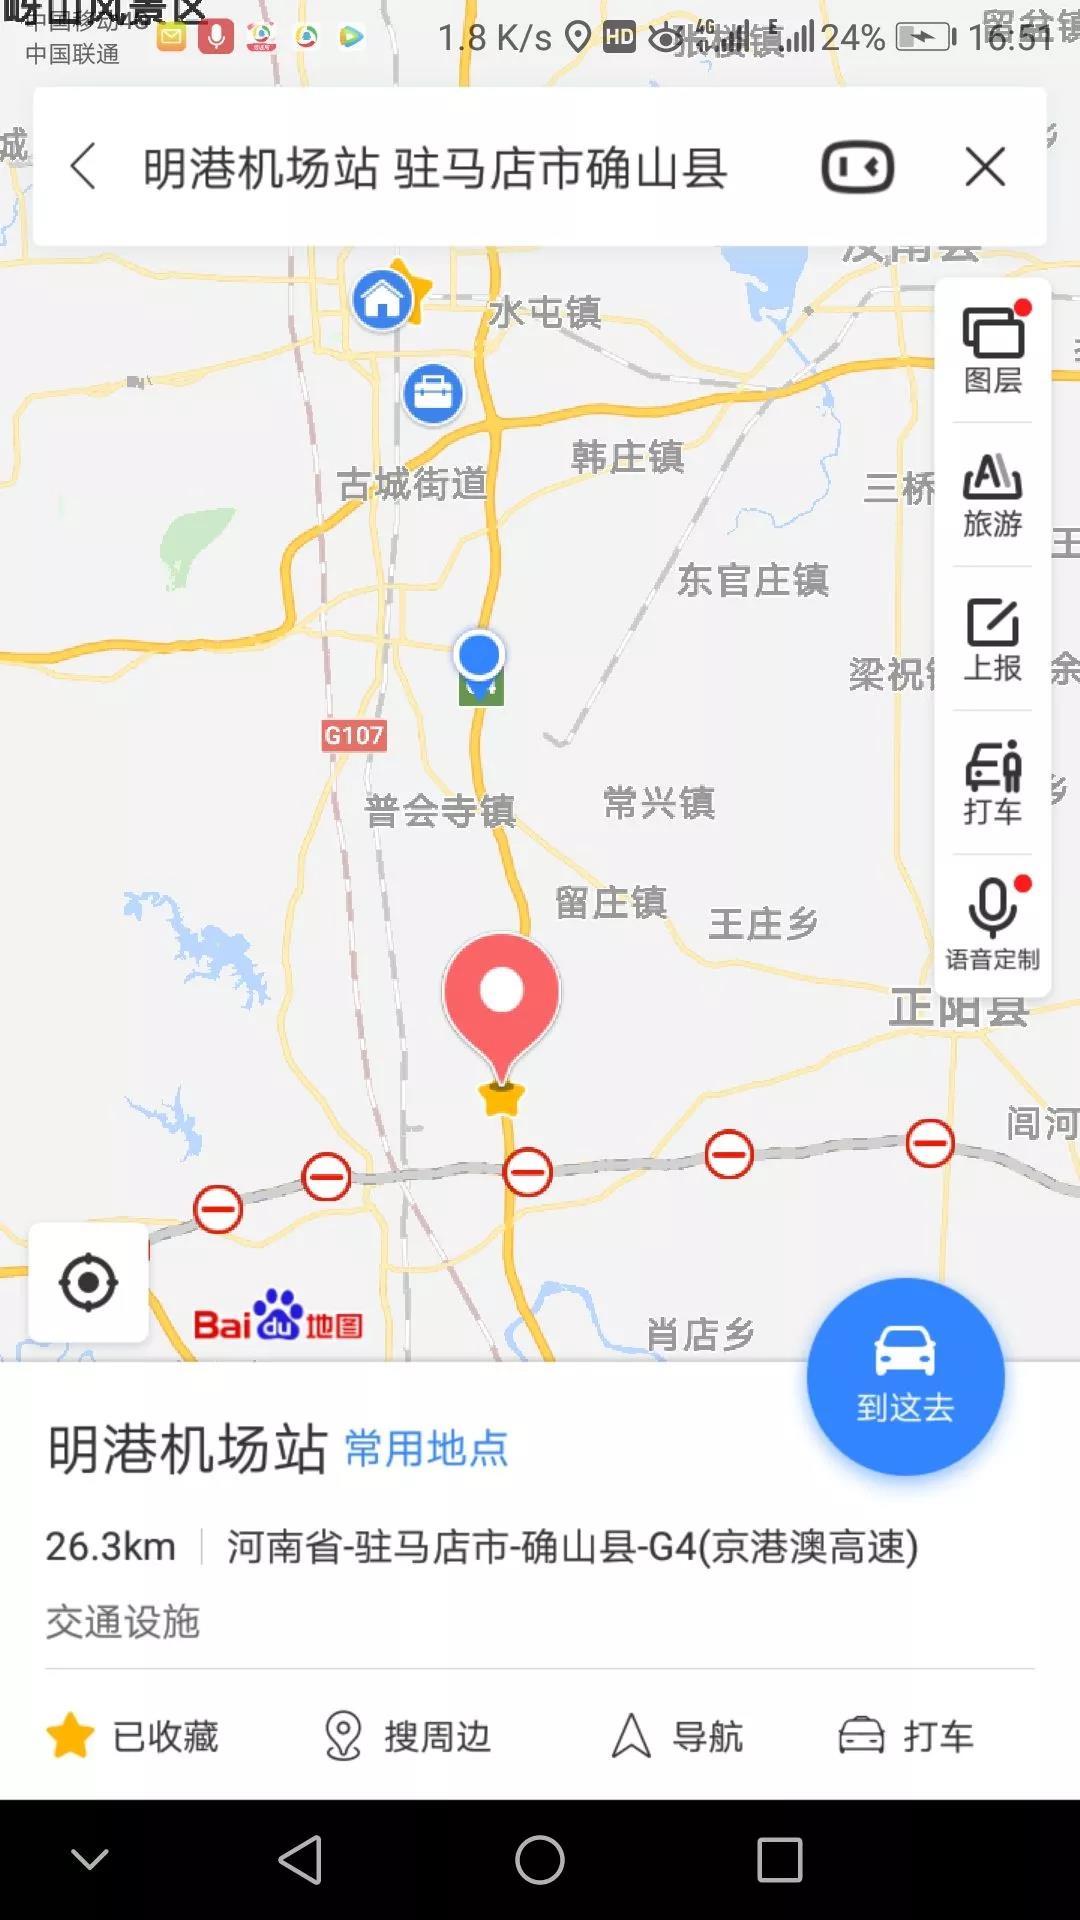 确山县新安店镇地图图片